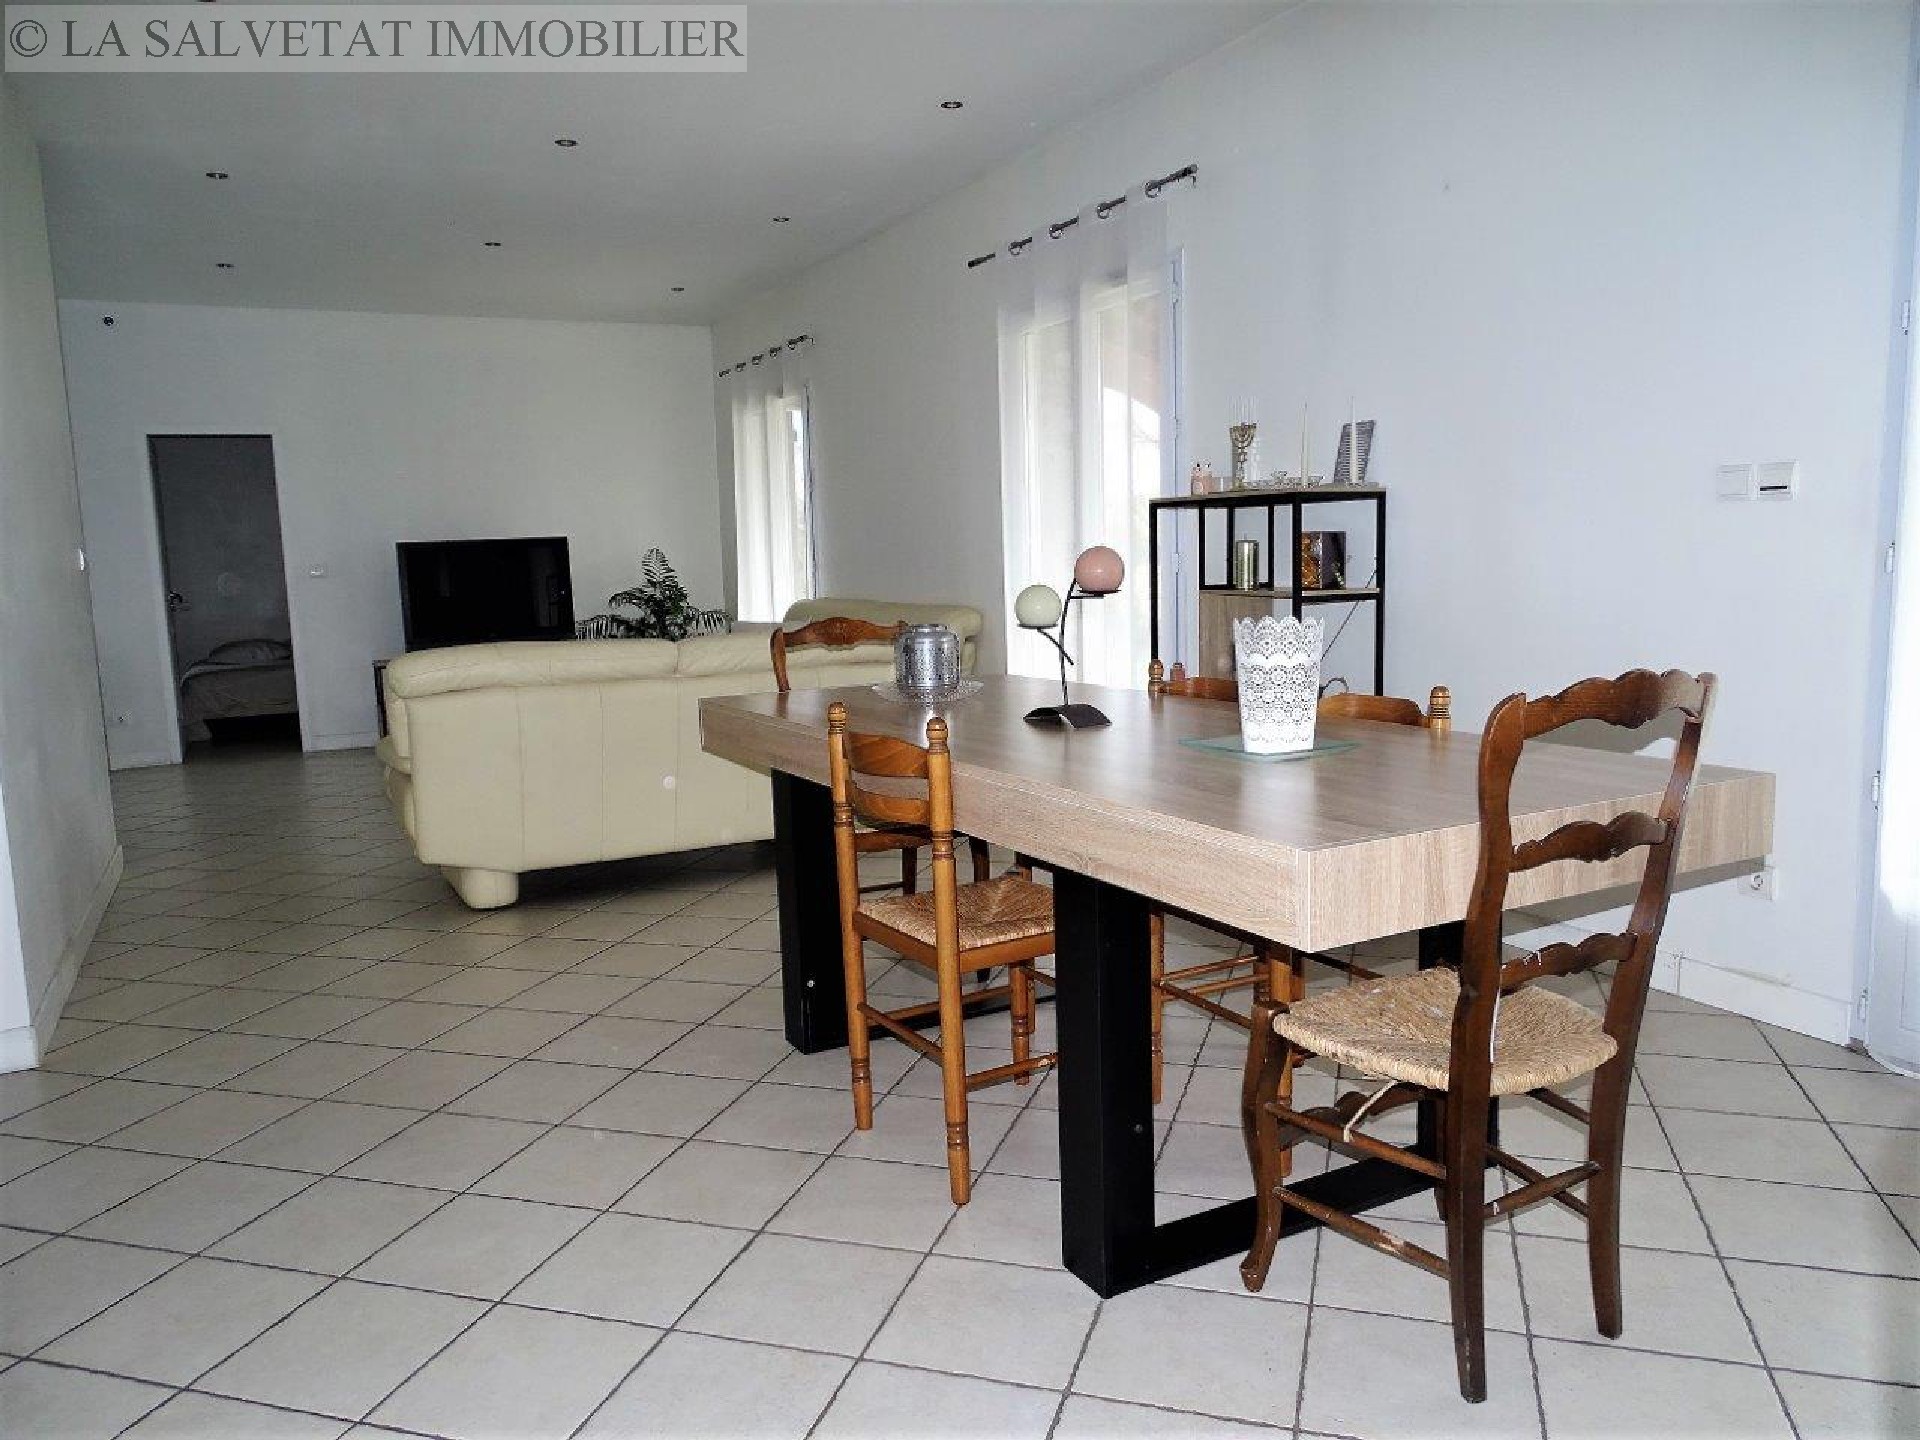 Vente maison-villa - RIEUMES<br>165 m², 7 pièces